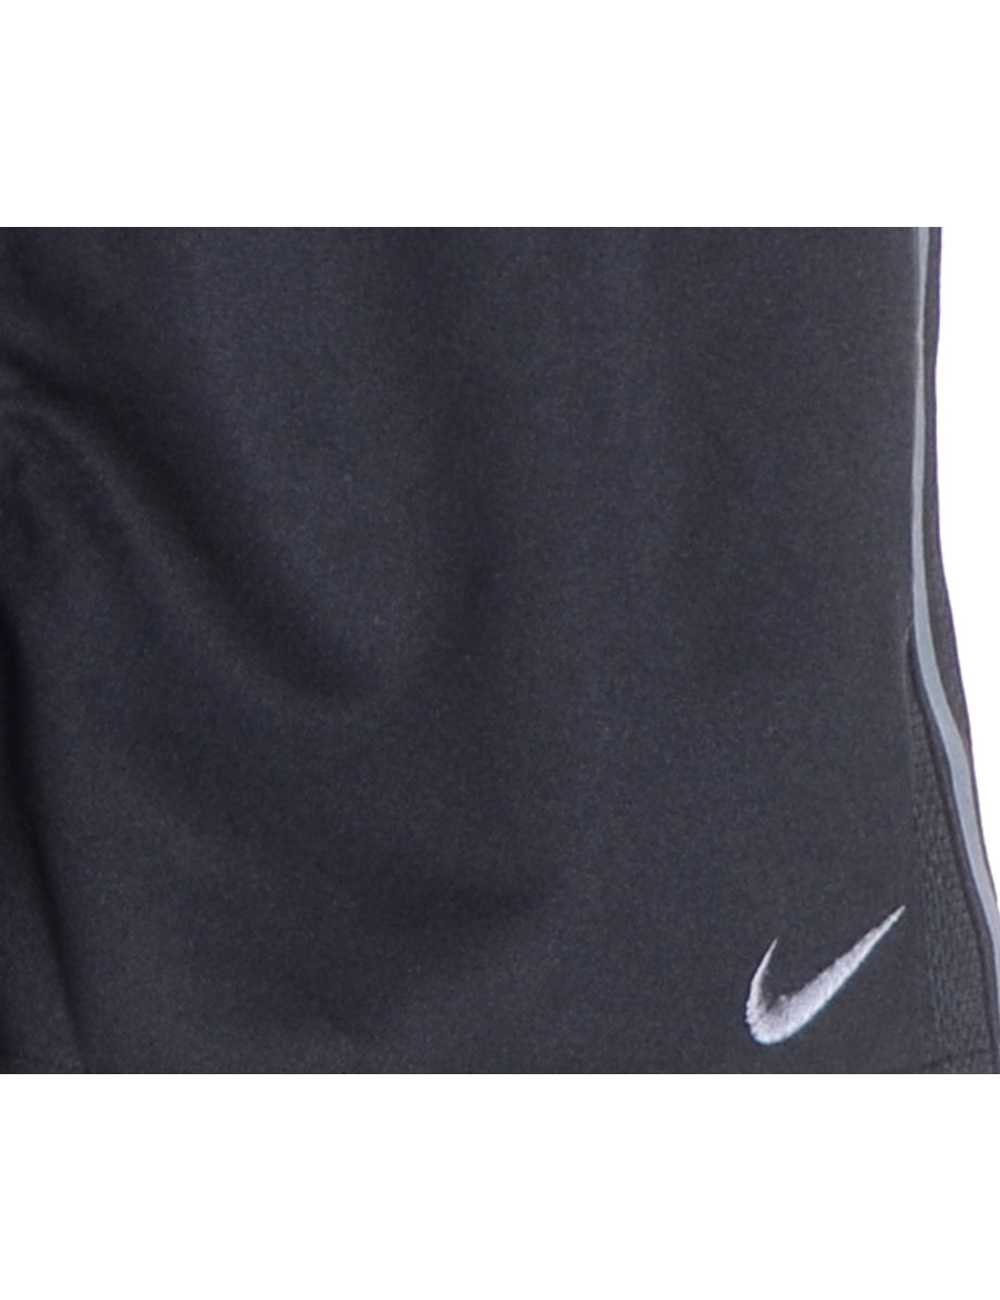 Reworked Nike Sports Shorts - image 4